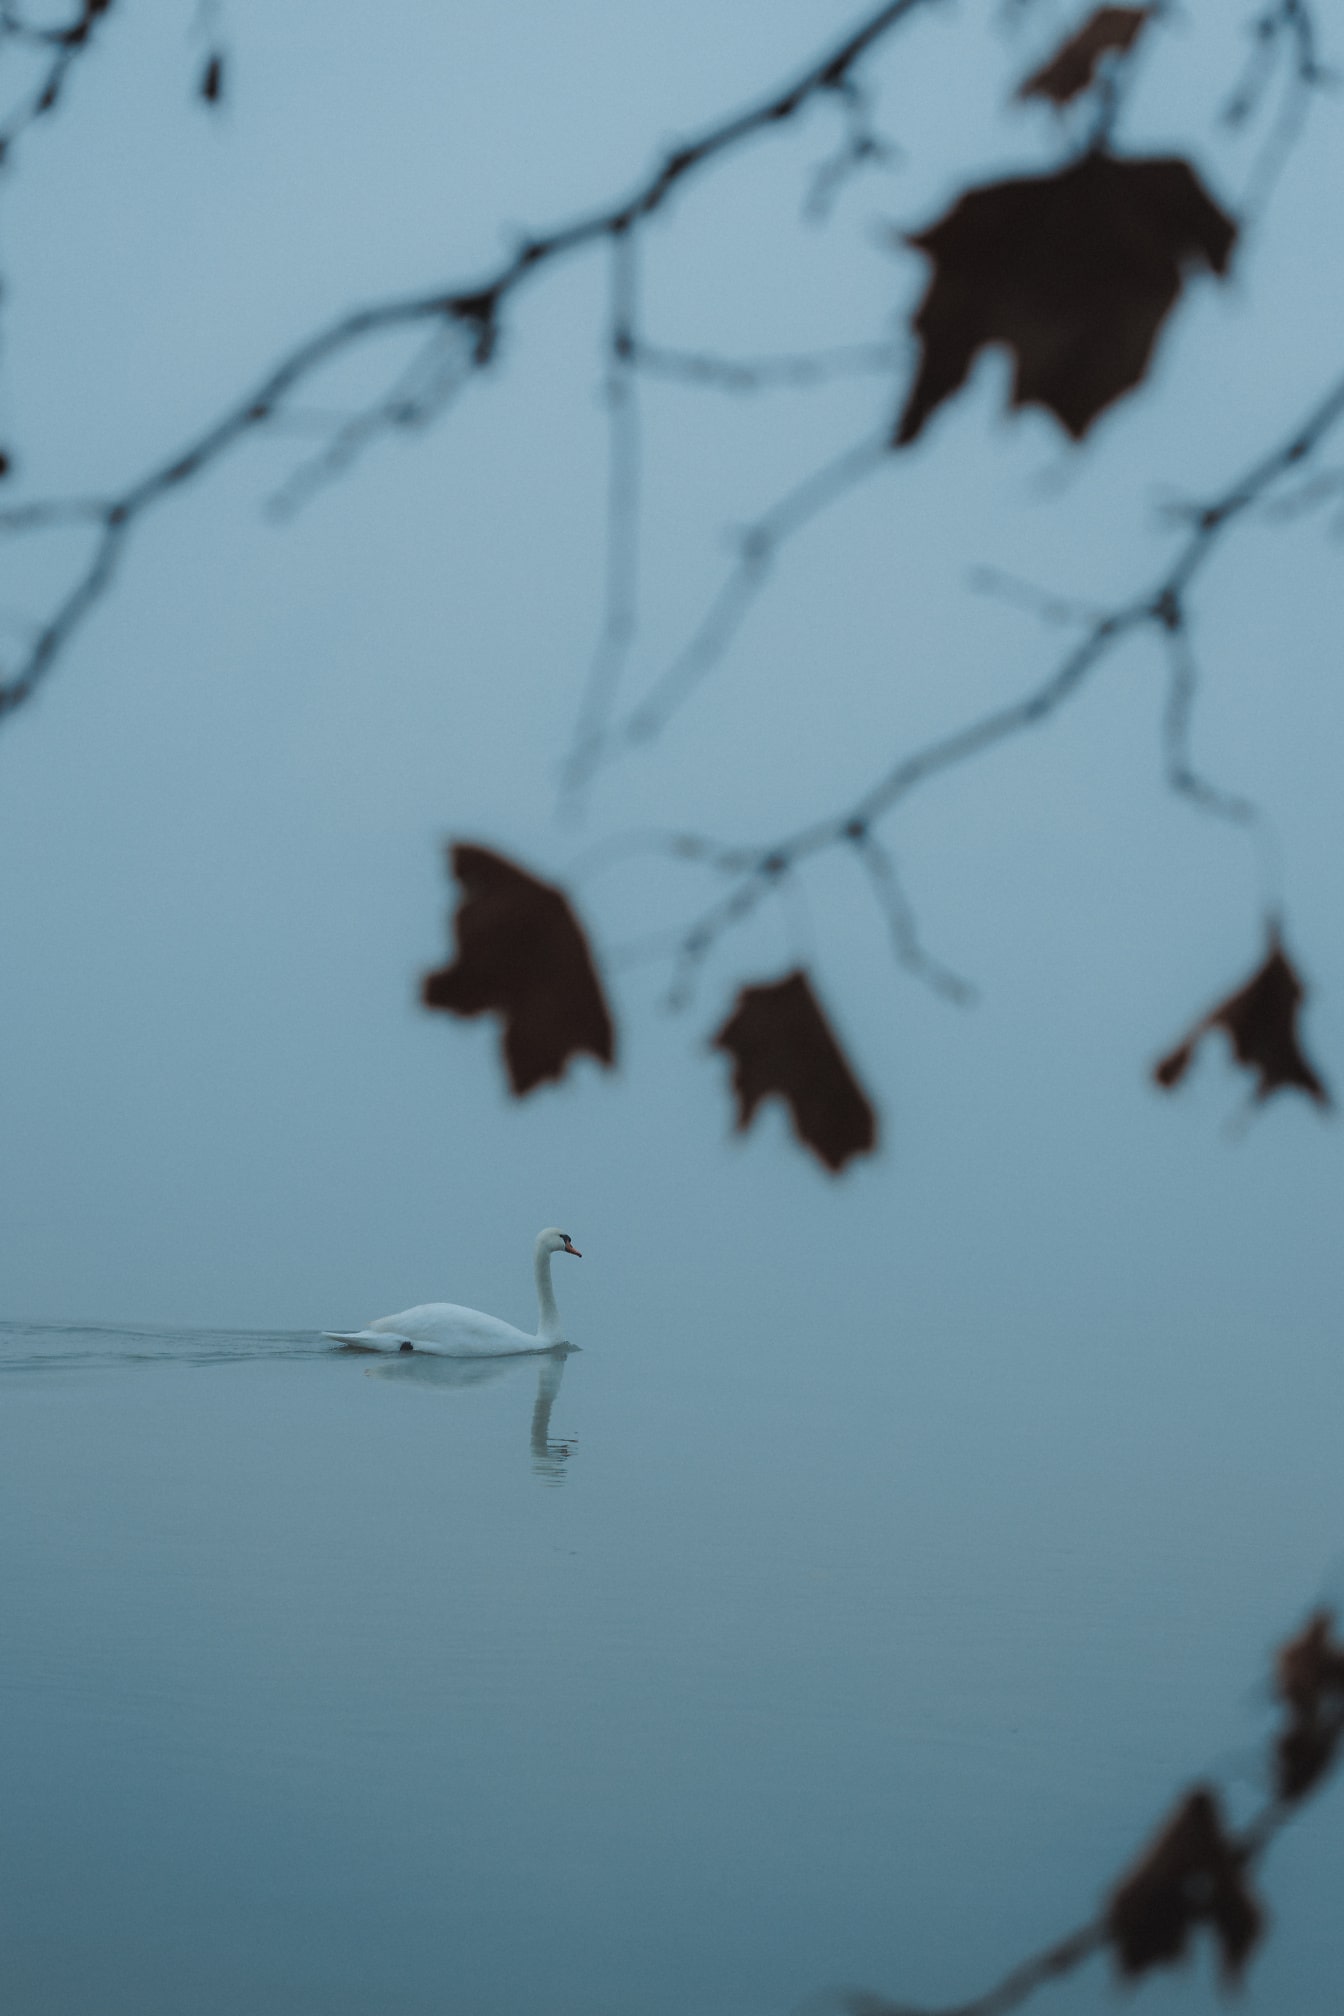 Cigno che nuota da solo nell’acqua in un giorno d’autunno